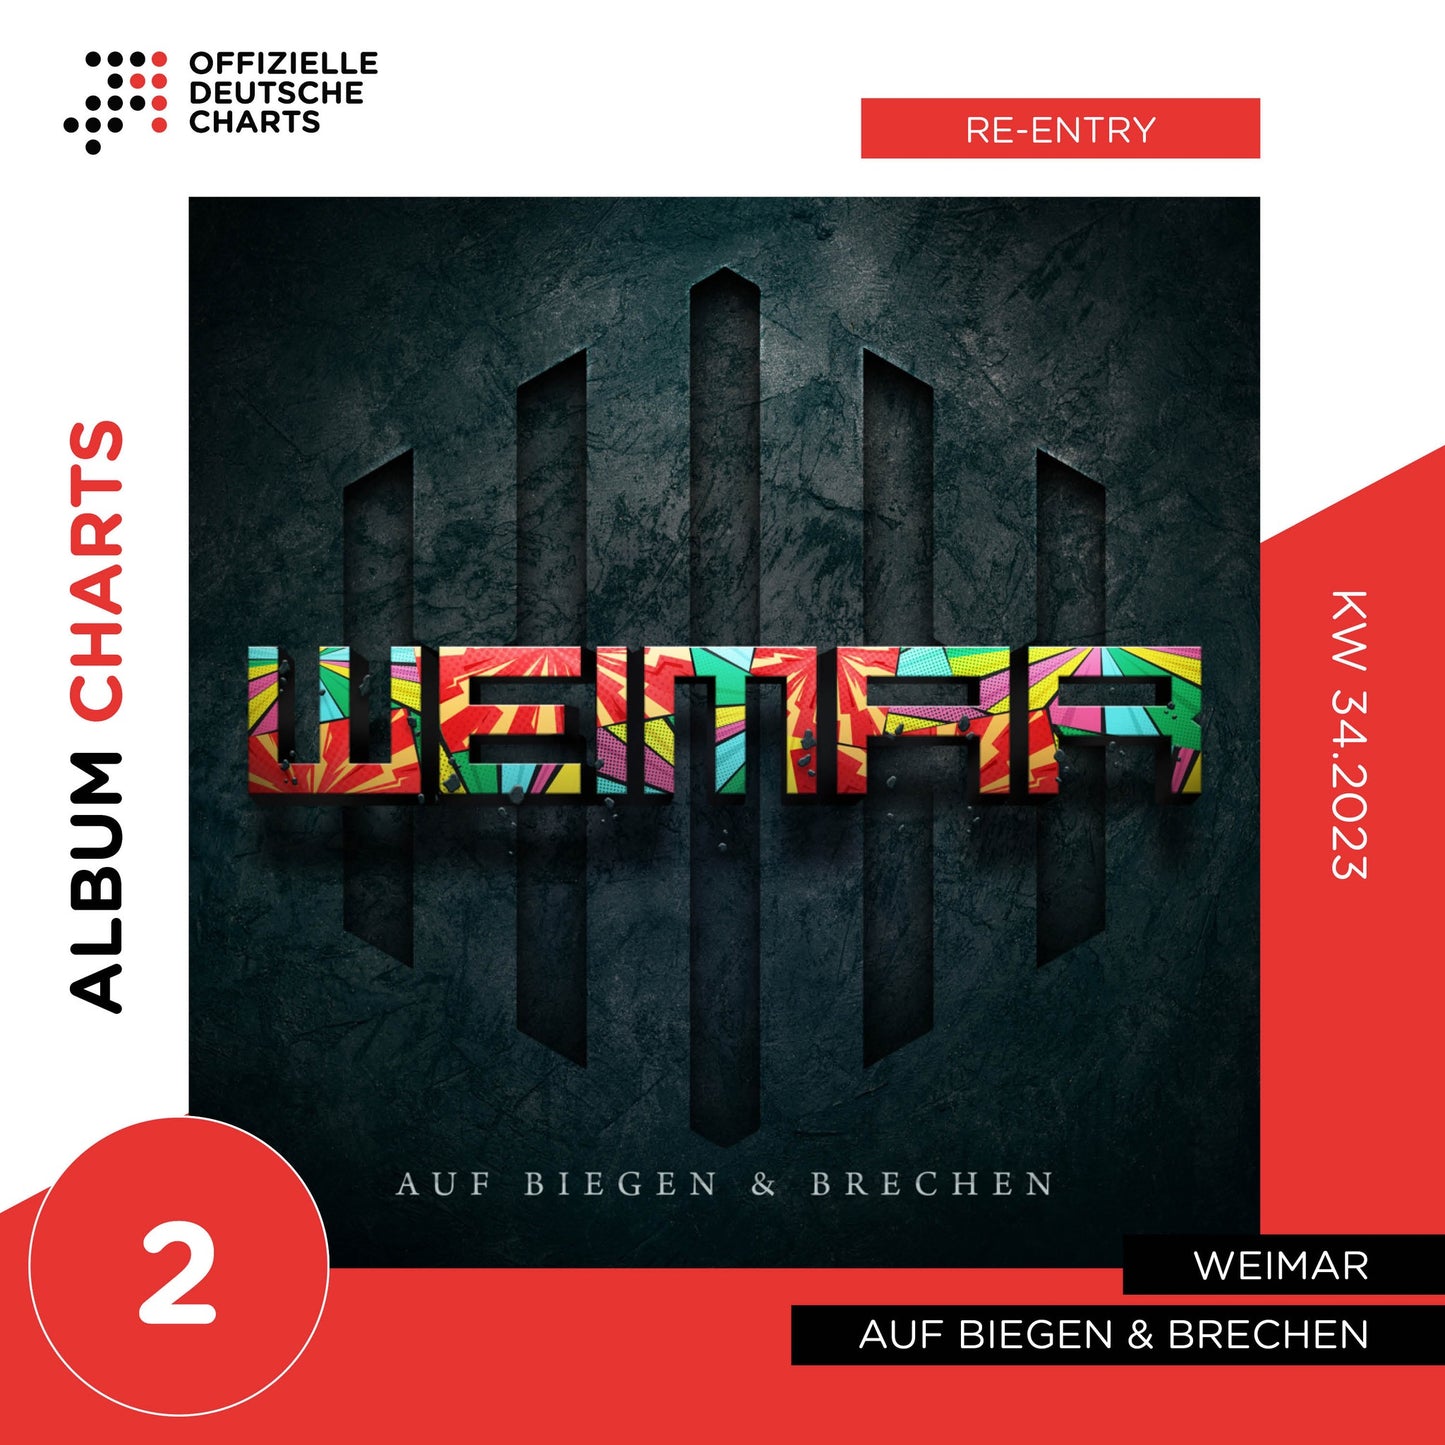 Weimar - Auf Biegen & Brechen (Re-Edition) Limited Fanbox